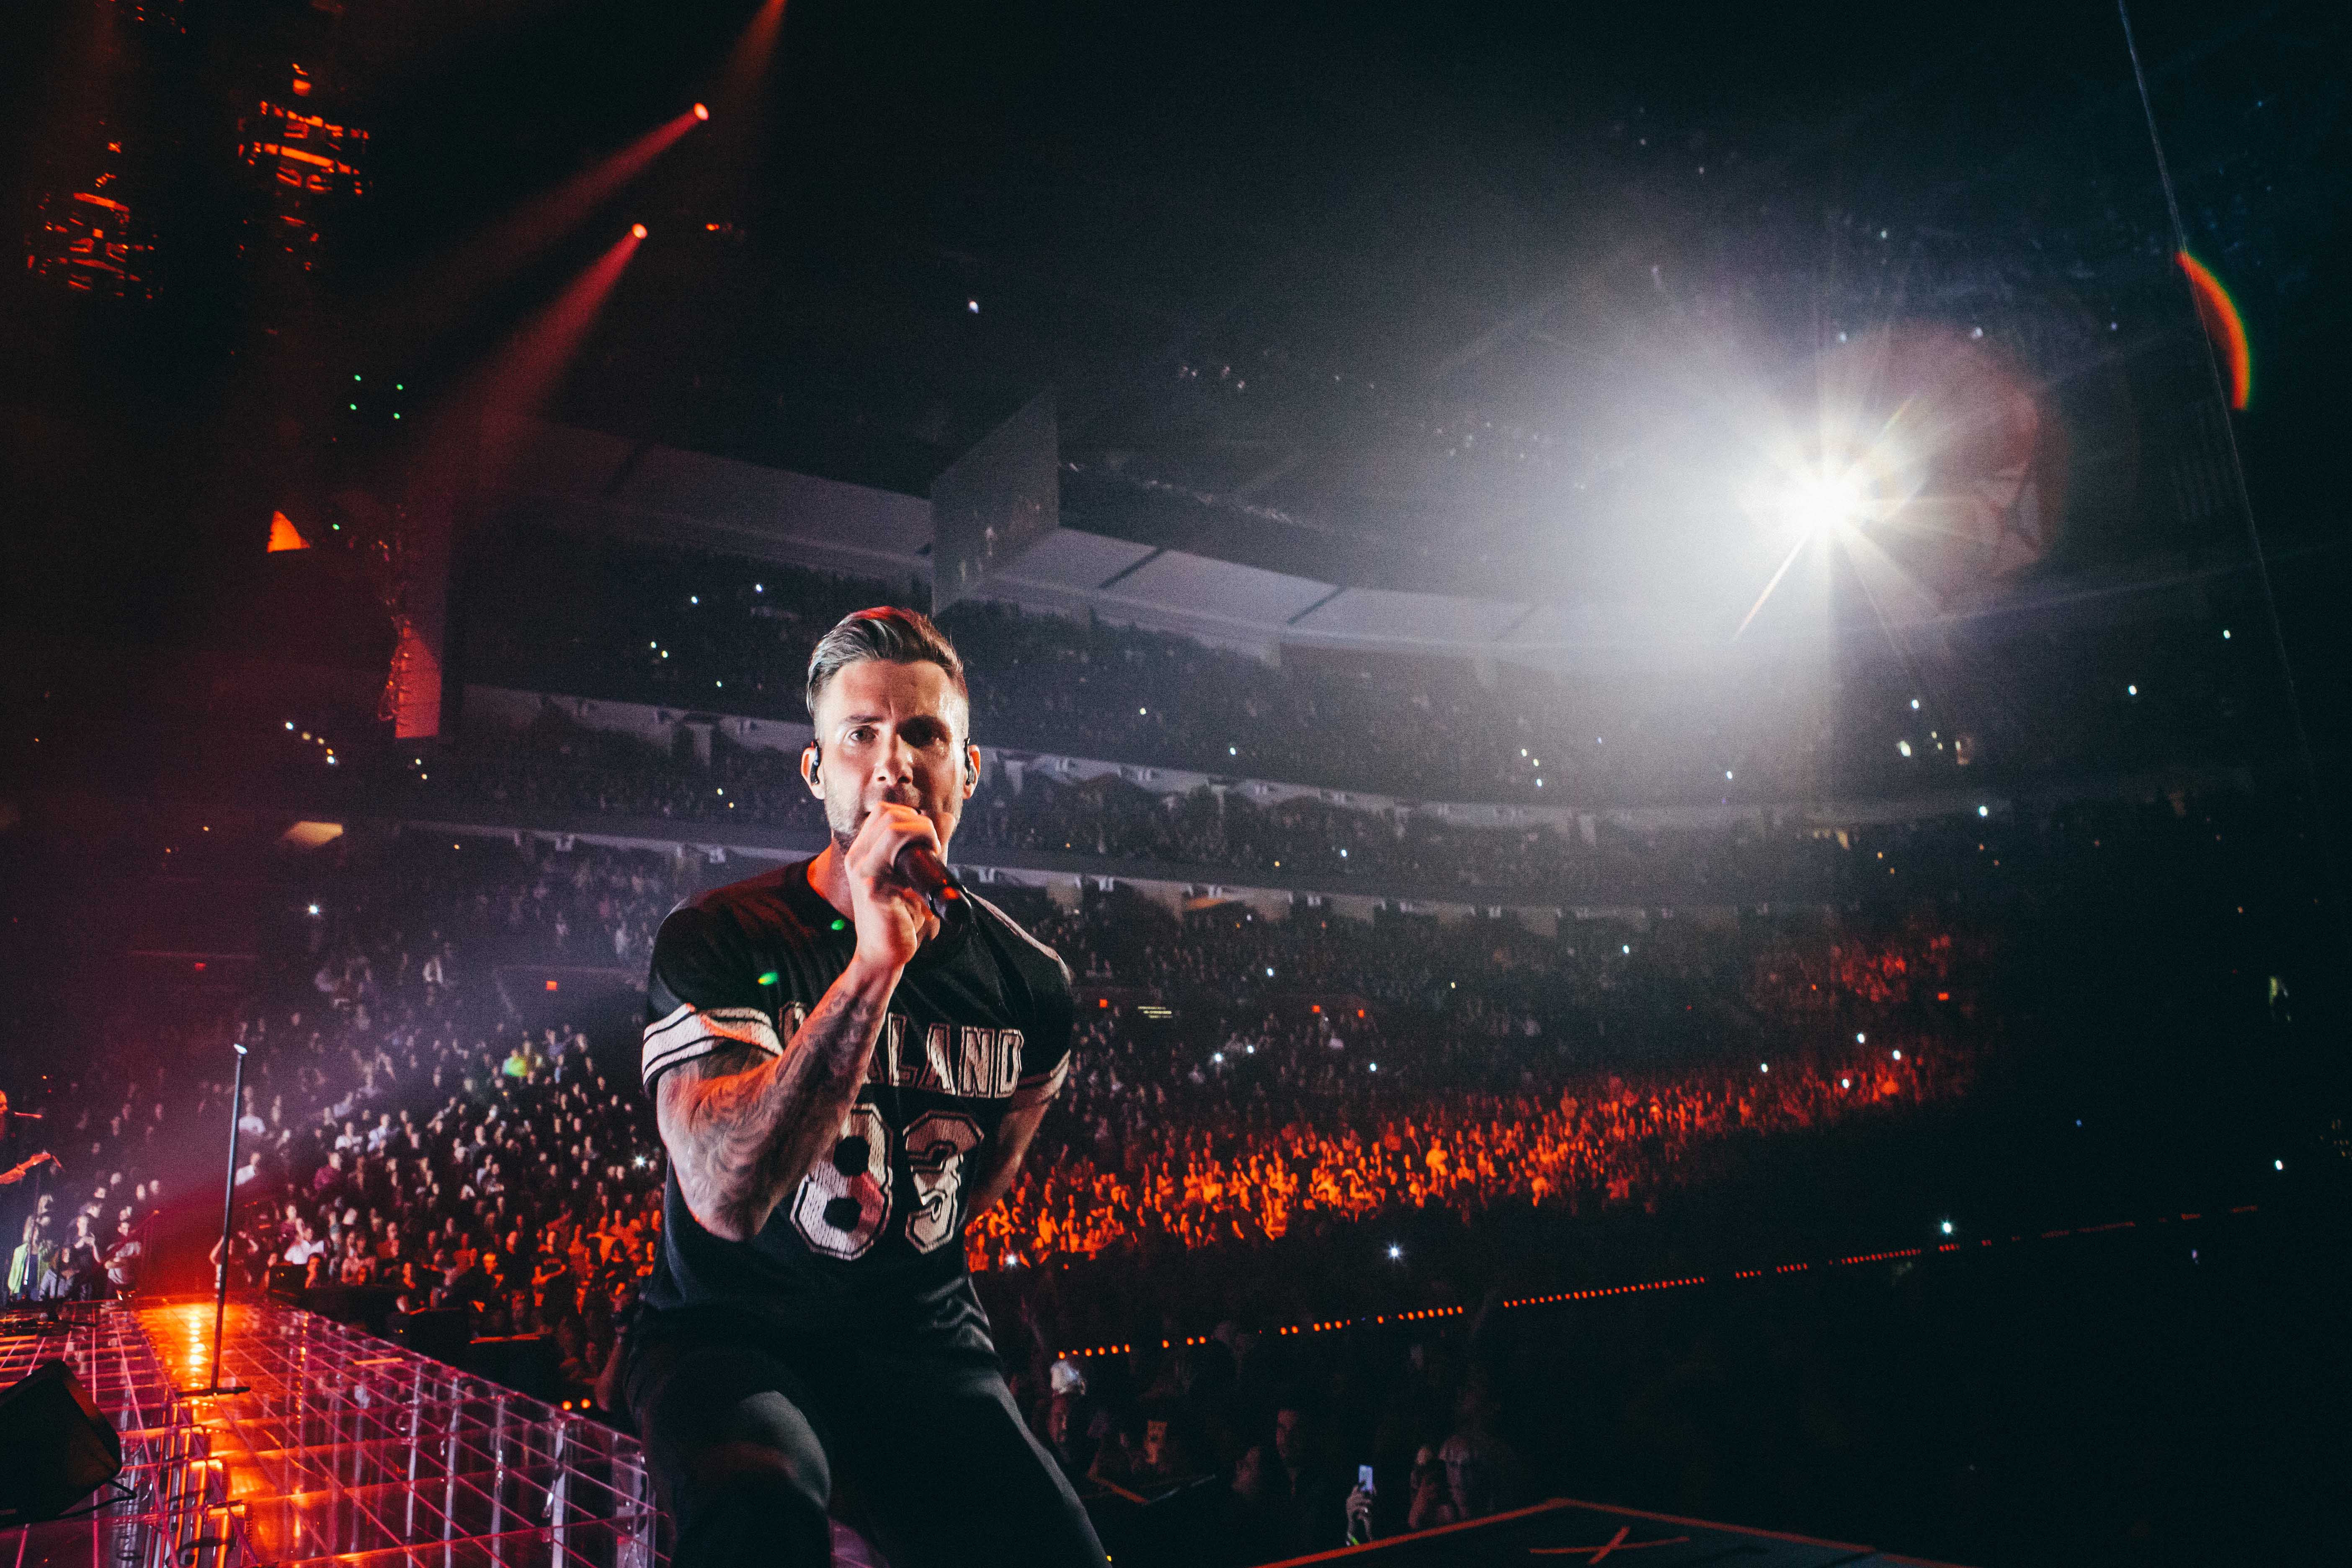 Imágenes exclusivas de Maroon 5 en concierto (FOTOS) Telemundo